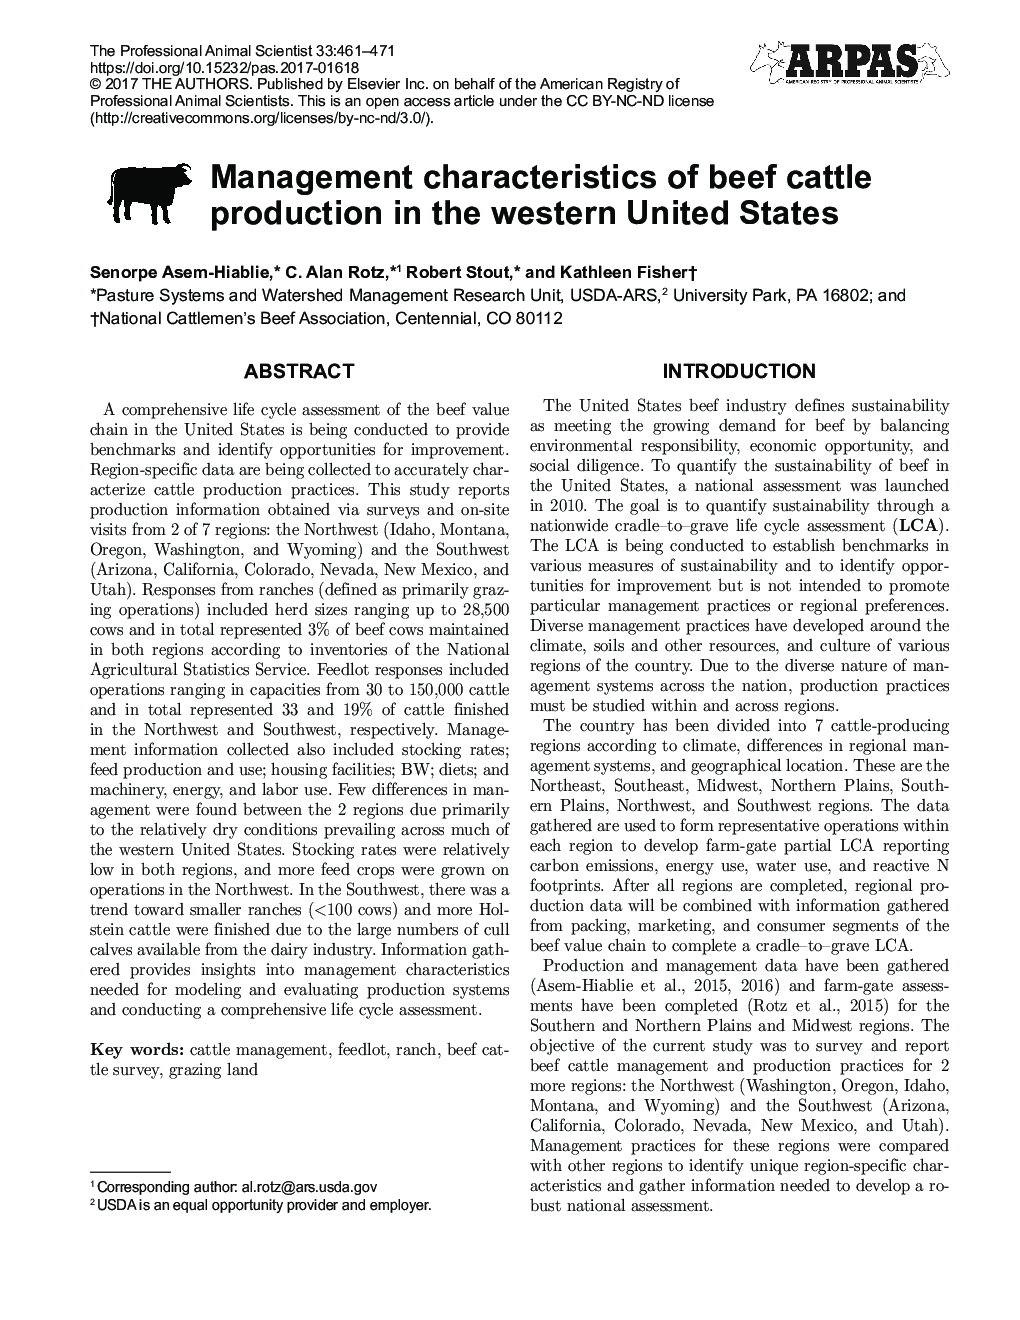 ویژگی های مدیریت تولید گاو گوشتی در غرب آمریکا 